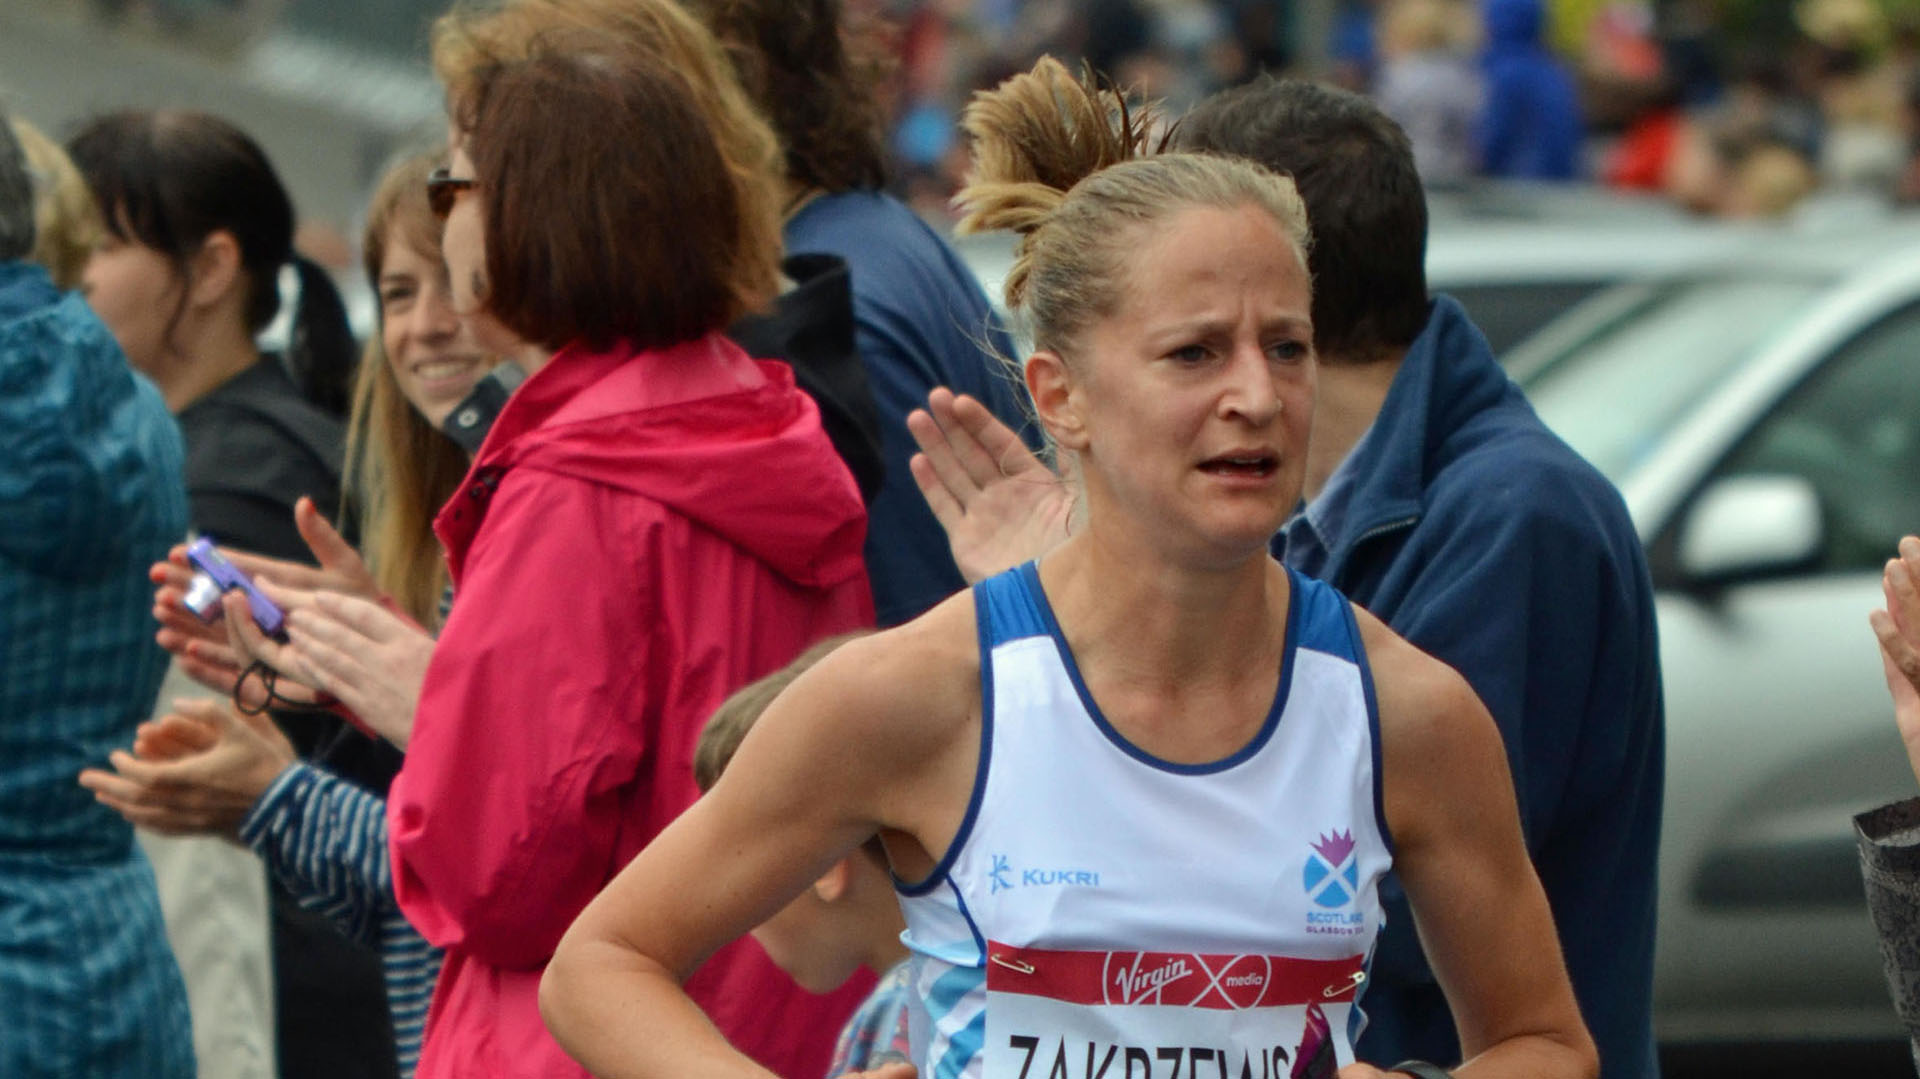 Escándalo en Reino Unido: una famosa maratonista terminó en el podio pero fue descalificada por usar un auto